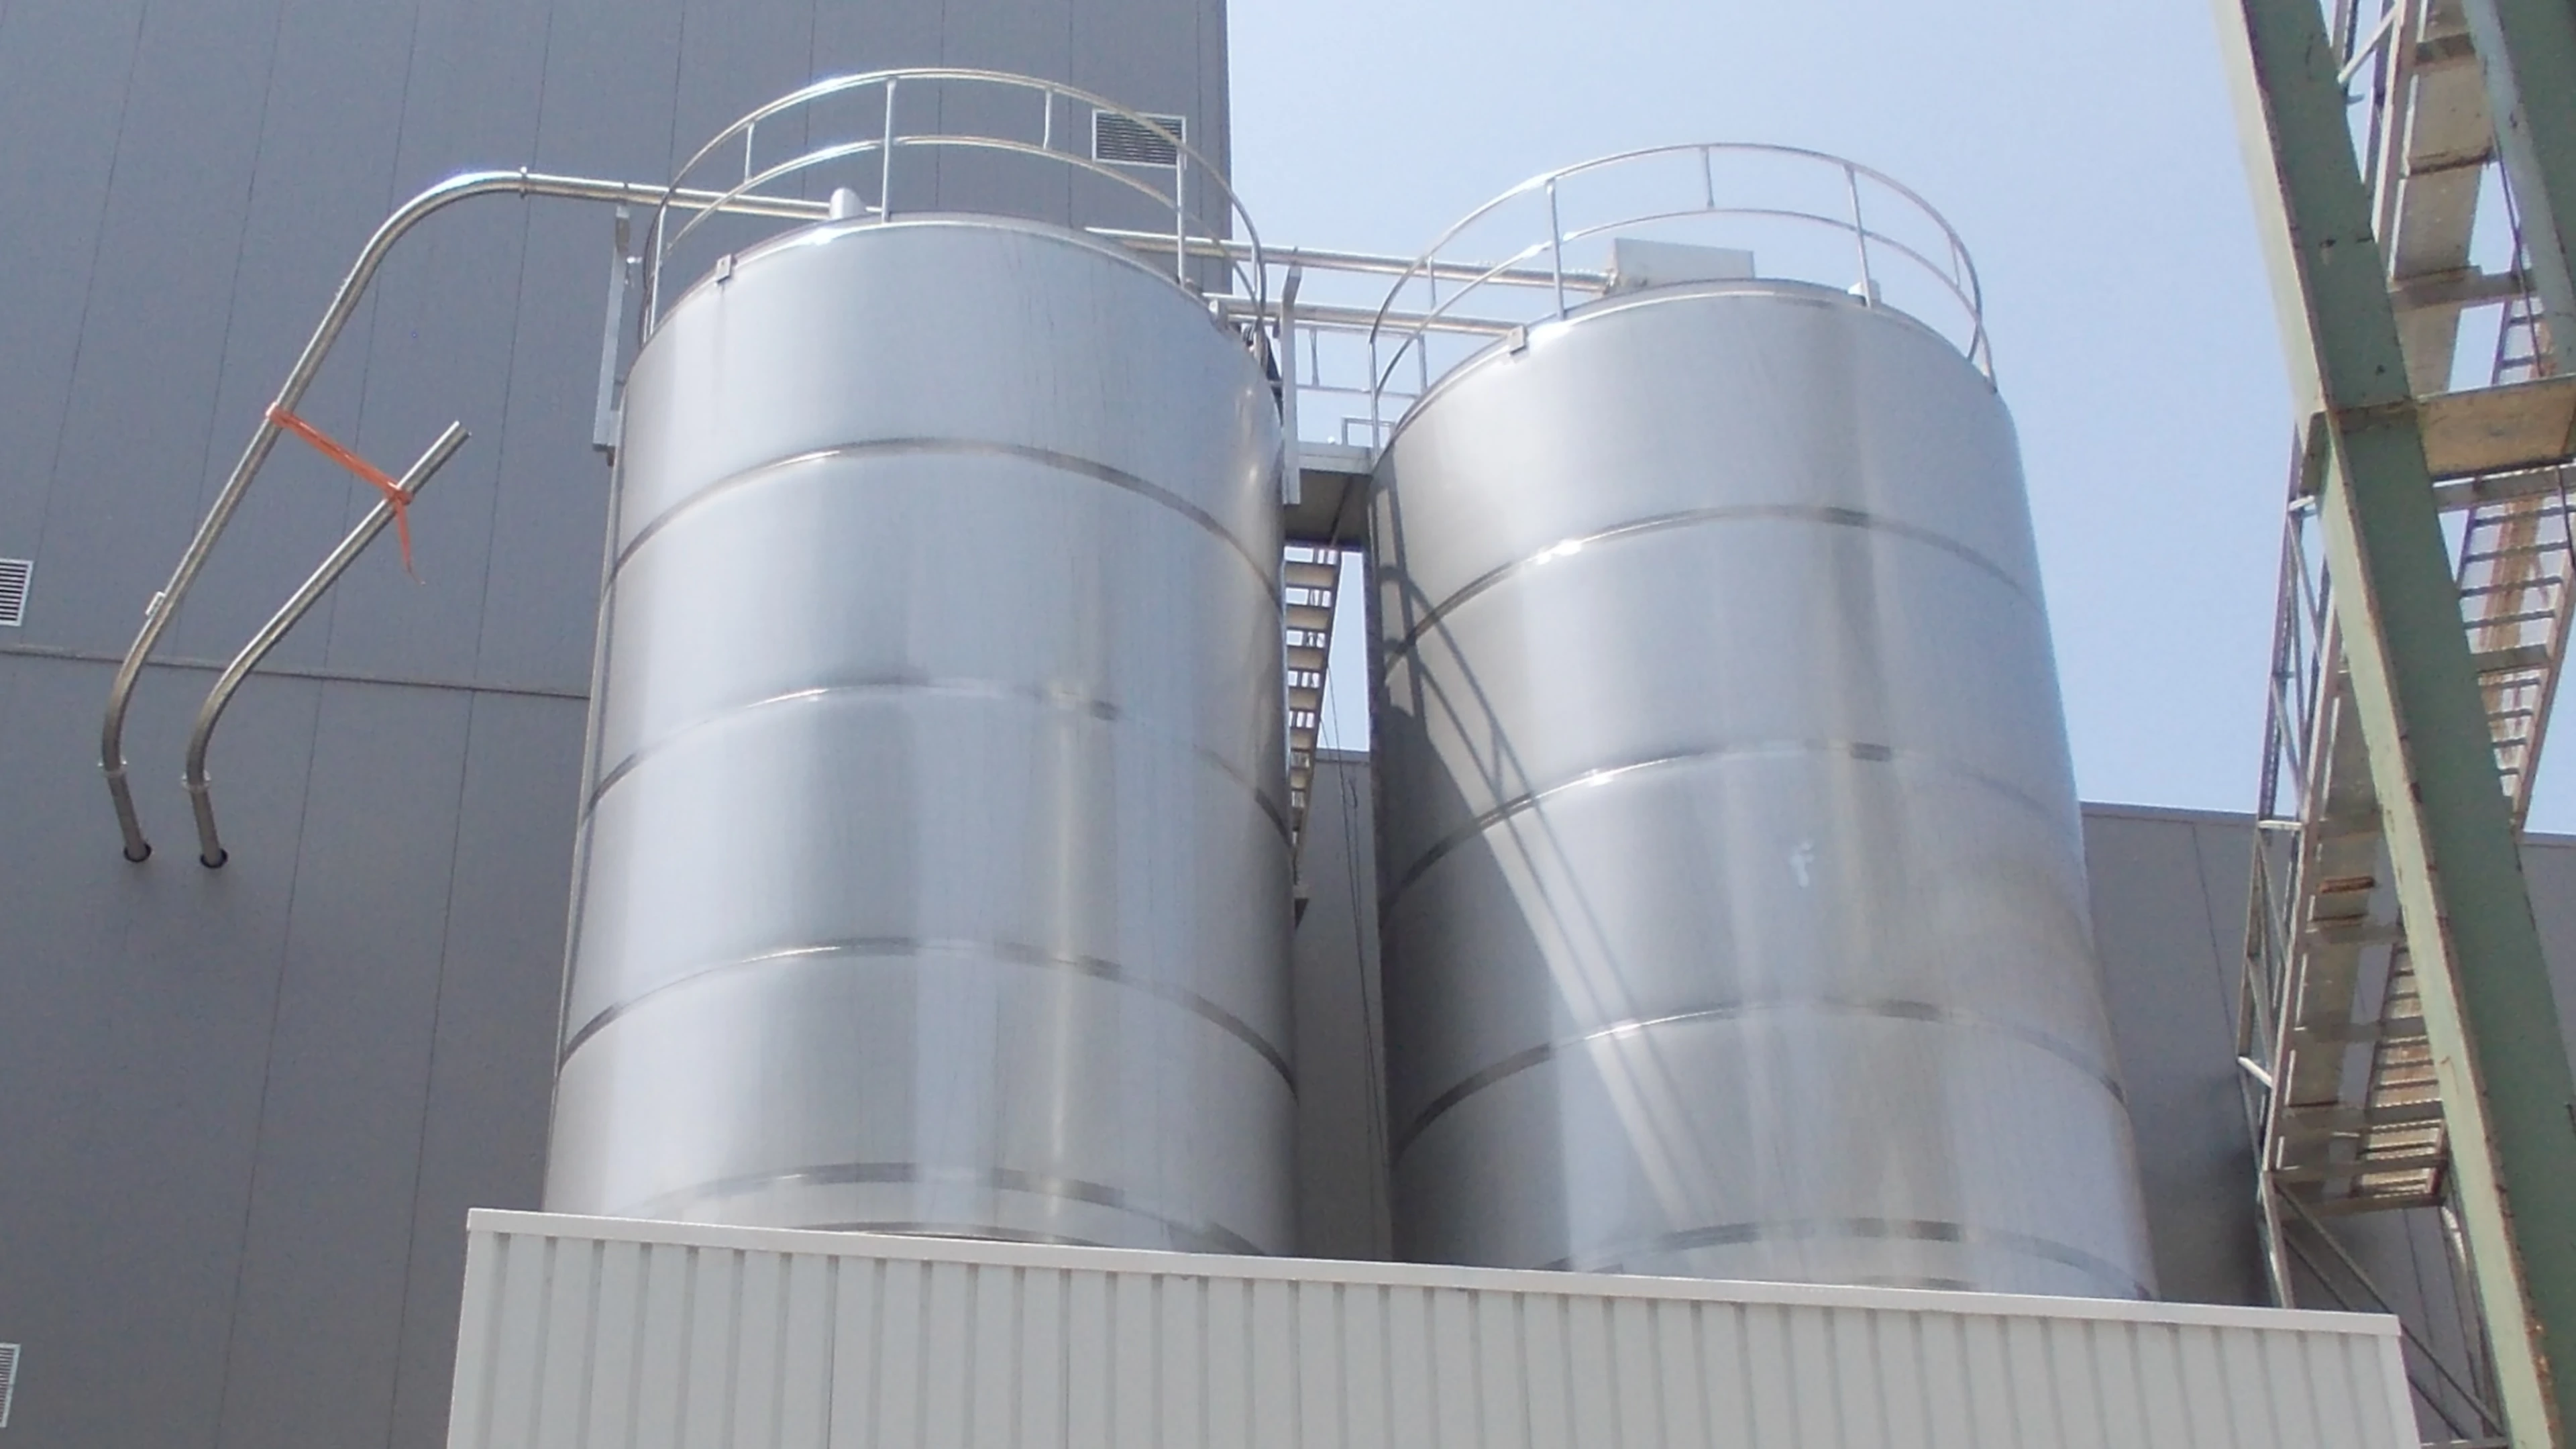 BTL Unidade de armazenamento de cereais Indústria alimentar